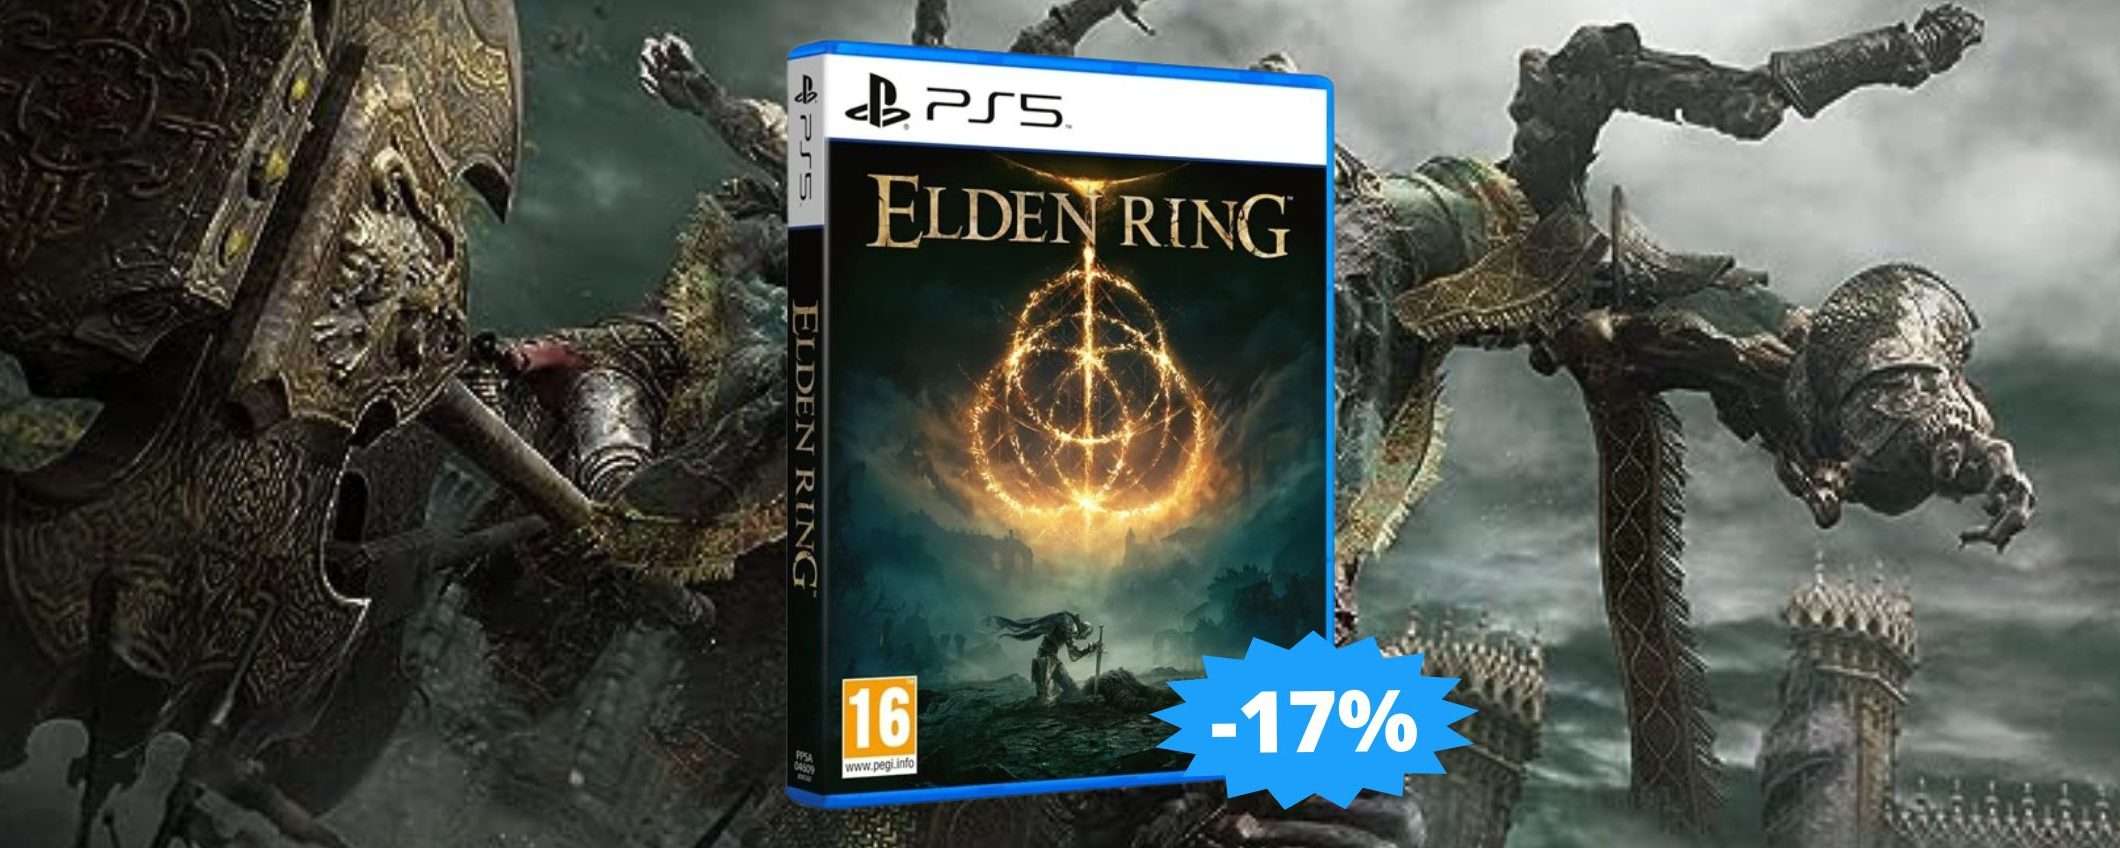 Elden Ring per PS5: un'avventura MAGICA imperdibile (-17%)